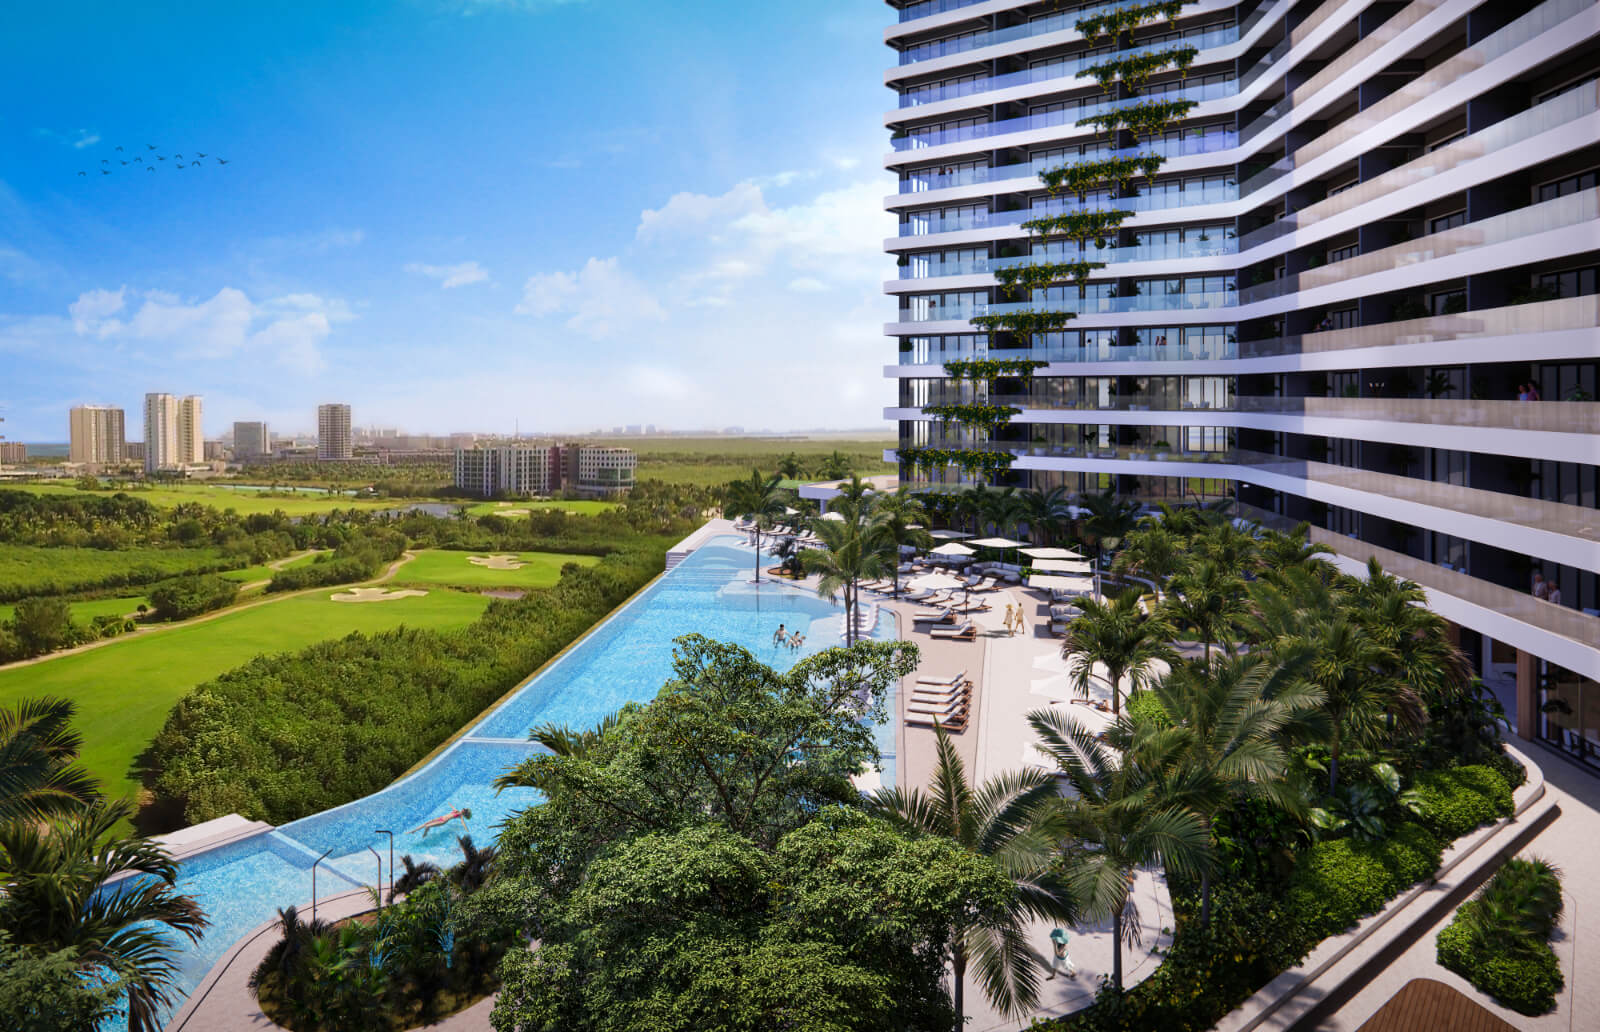 Condominium Ocean view, pool, beach club, pre-sale, Cancún